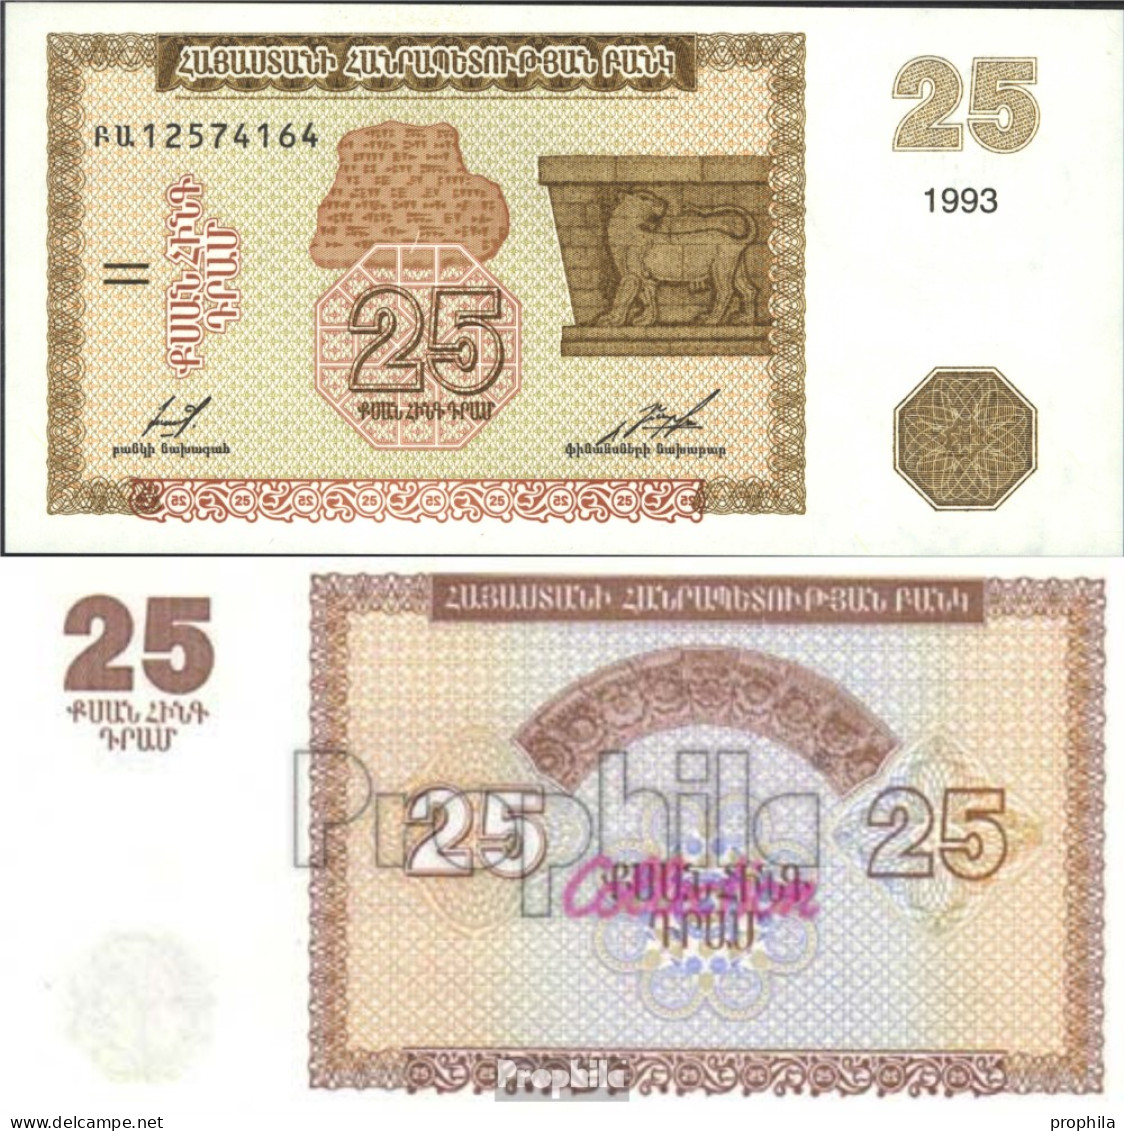 Armenien 34a Bankfrisch 1993 25 Drams - Armenia